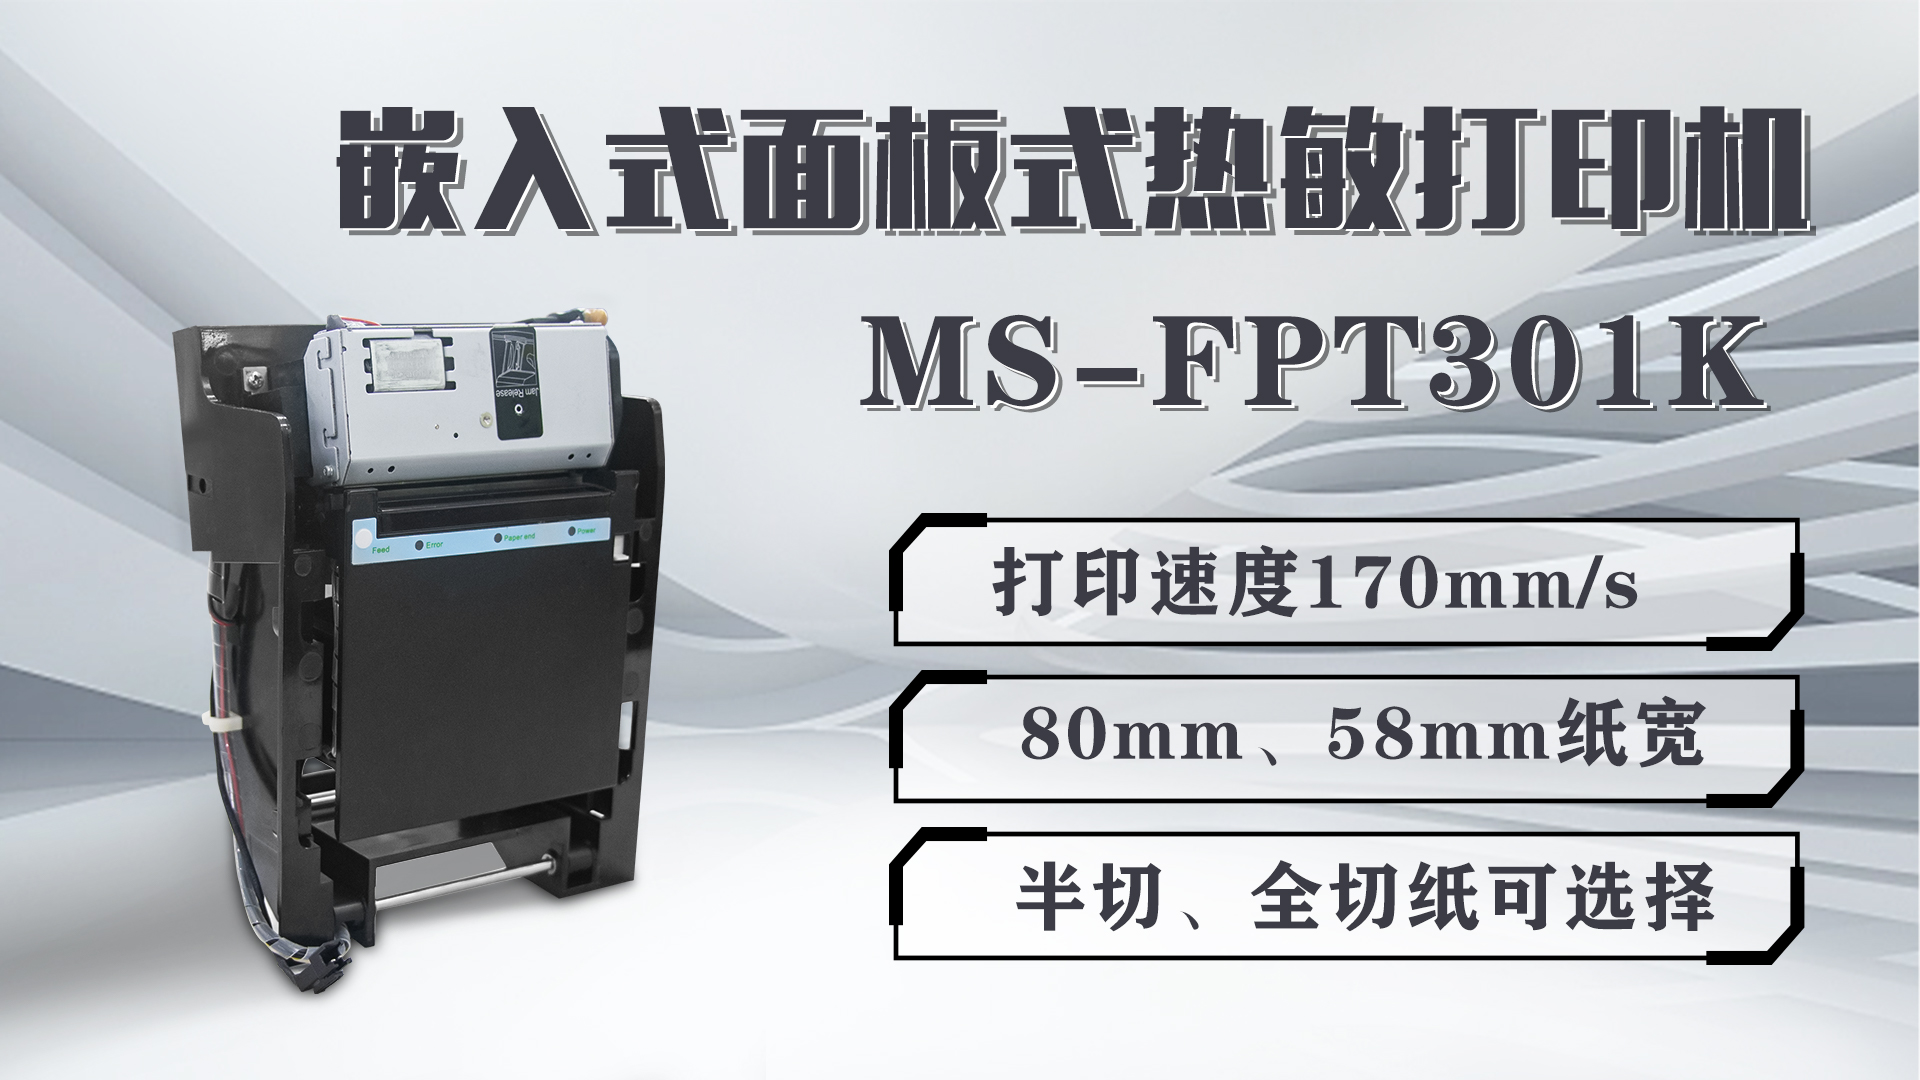 美松打印机MS-FPT301K为影院电影票打印提供解决方案